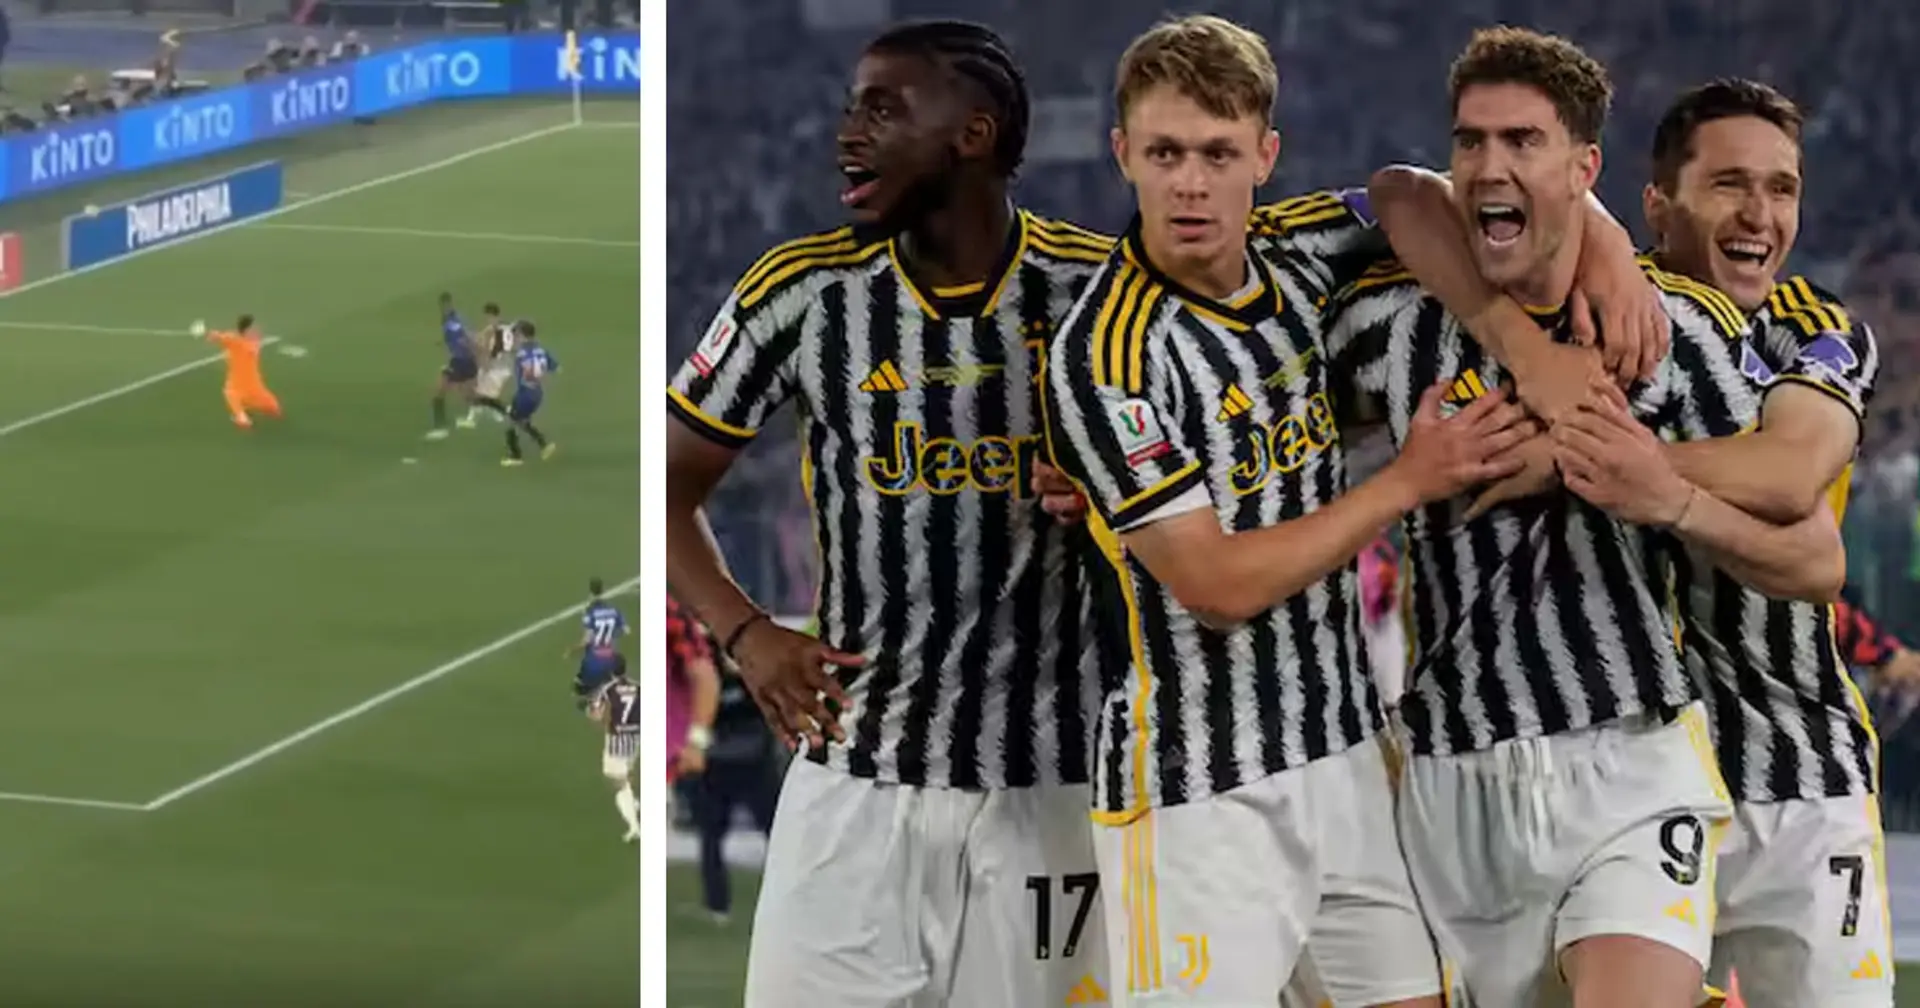 3 in grande mostra, 2 insufficienti: le pagelle dei giocatori della Juventus dopo i primi 45'